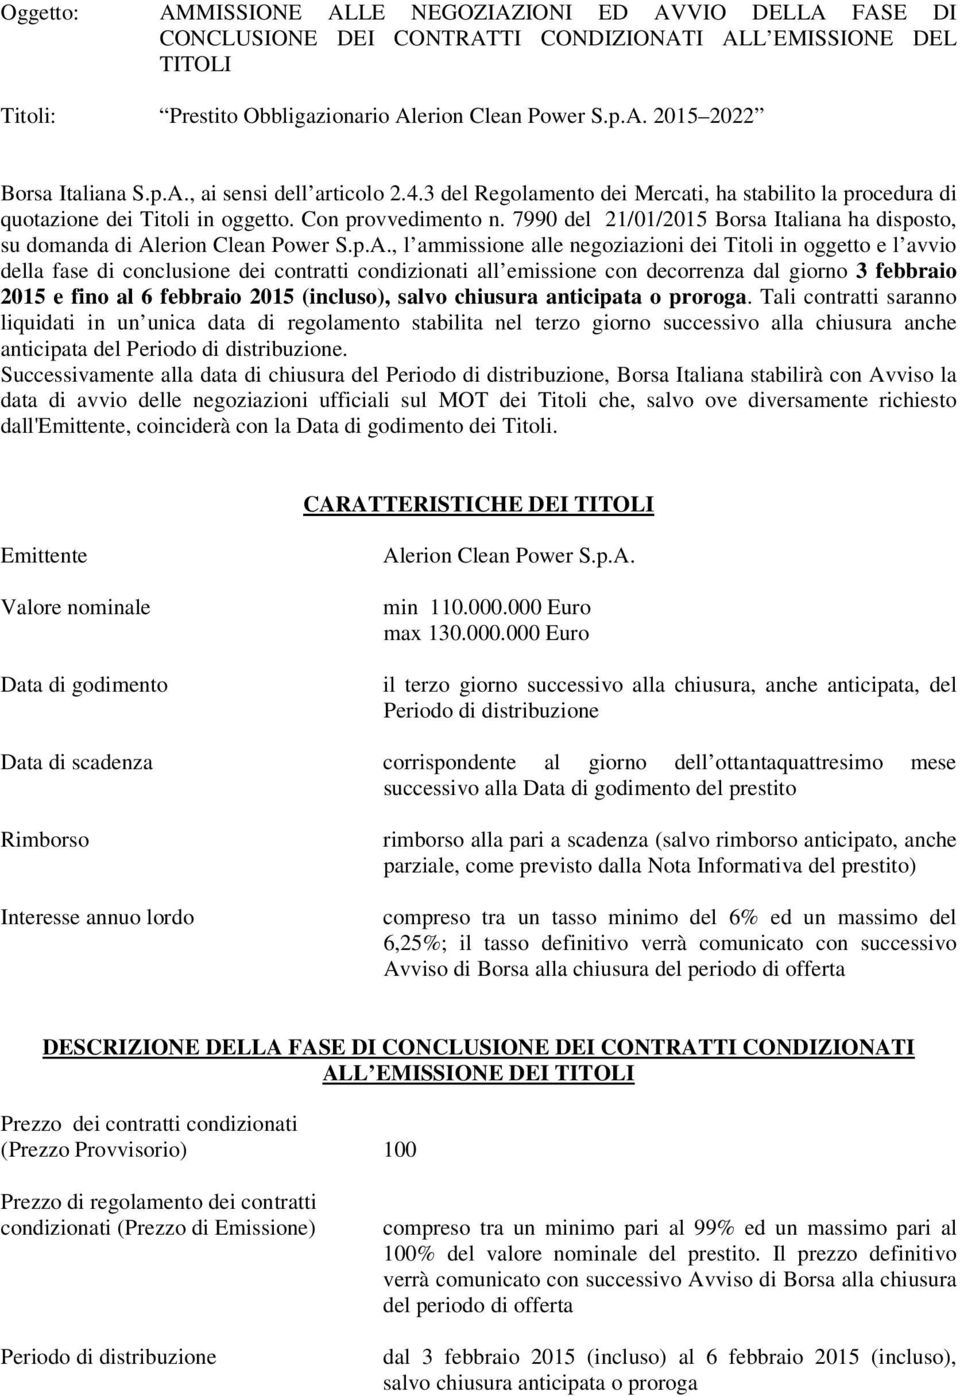 7990 del 21/01/2015 Borsa Italiana ha disposto, su domanda di Al